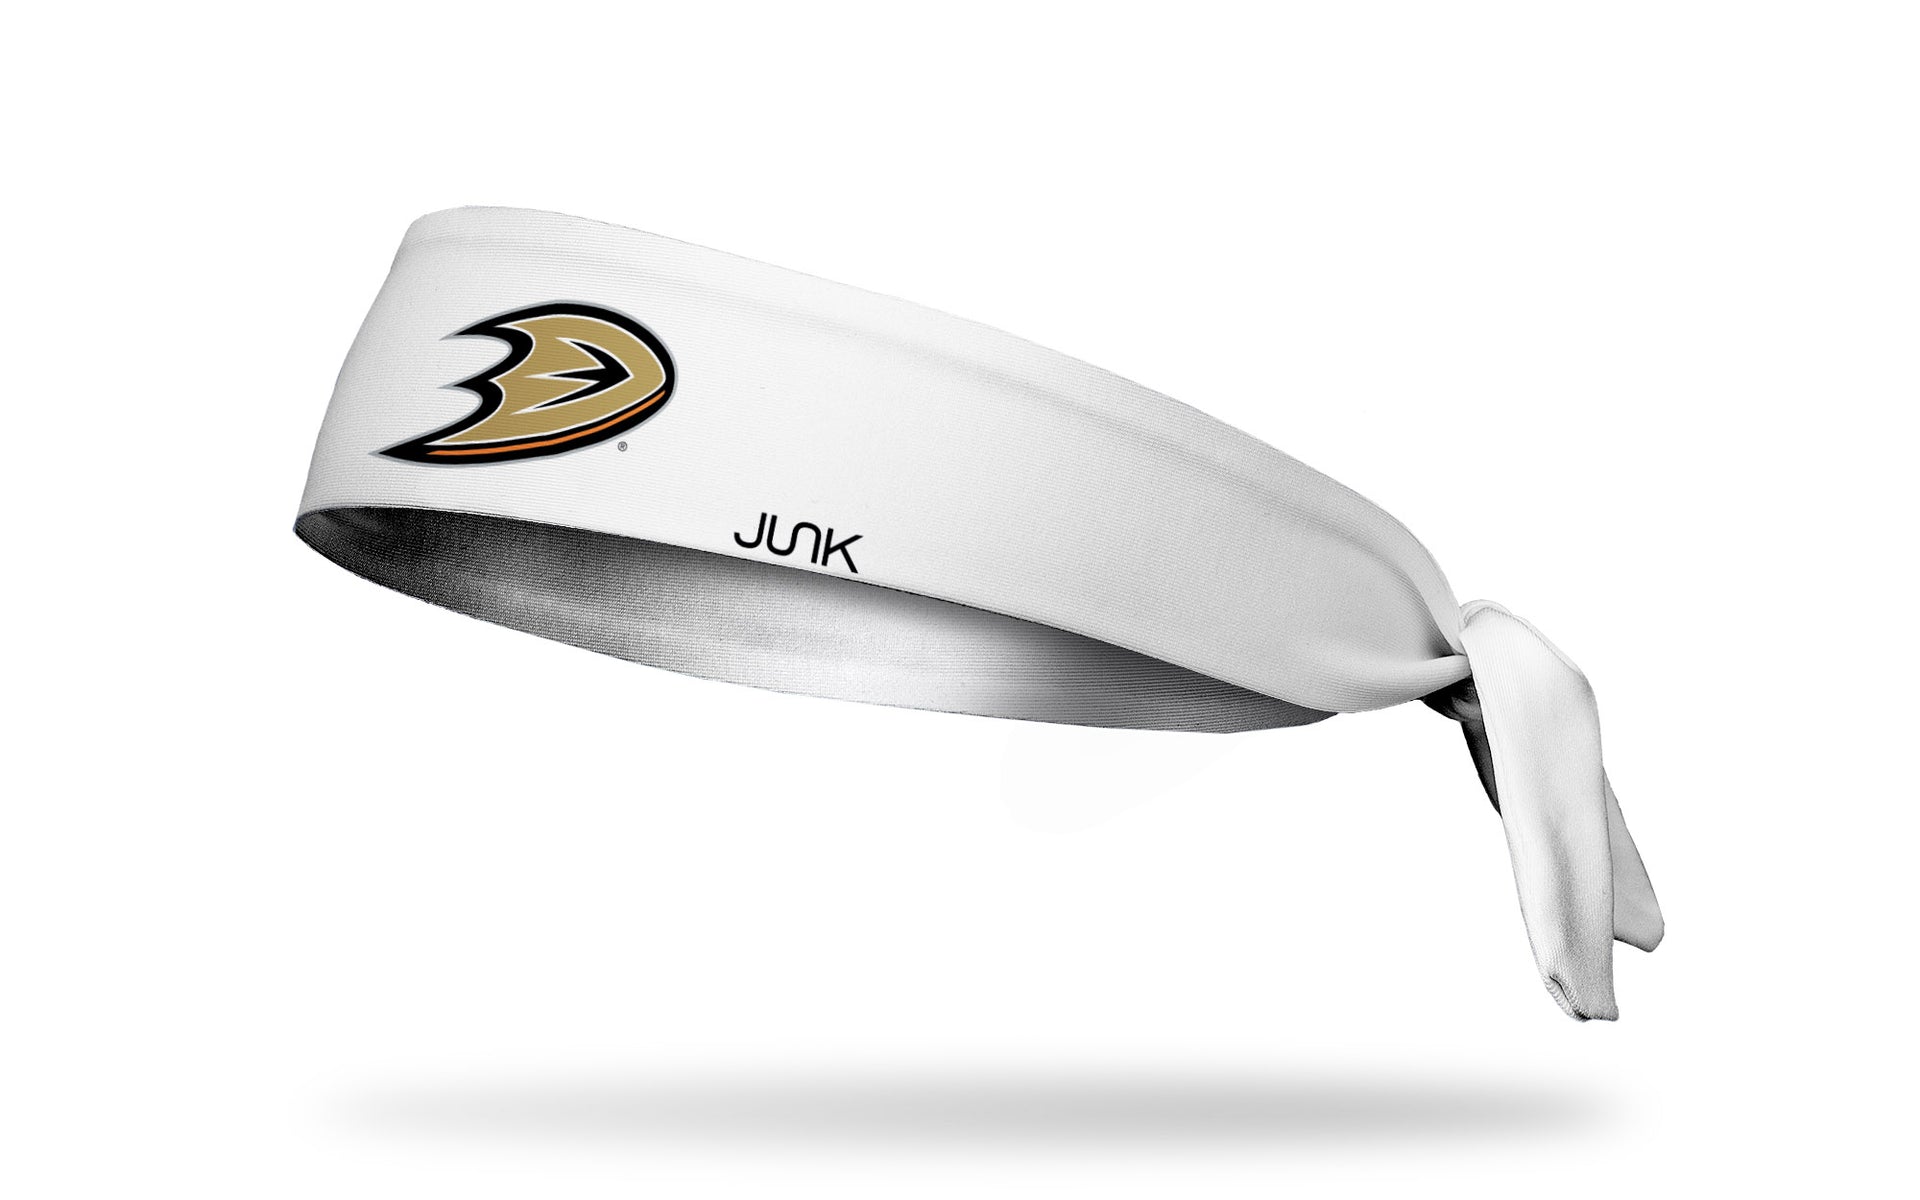 Anaheim Ducks: Logo White Tie Headband - View 1